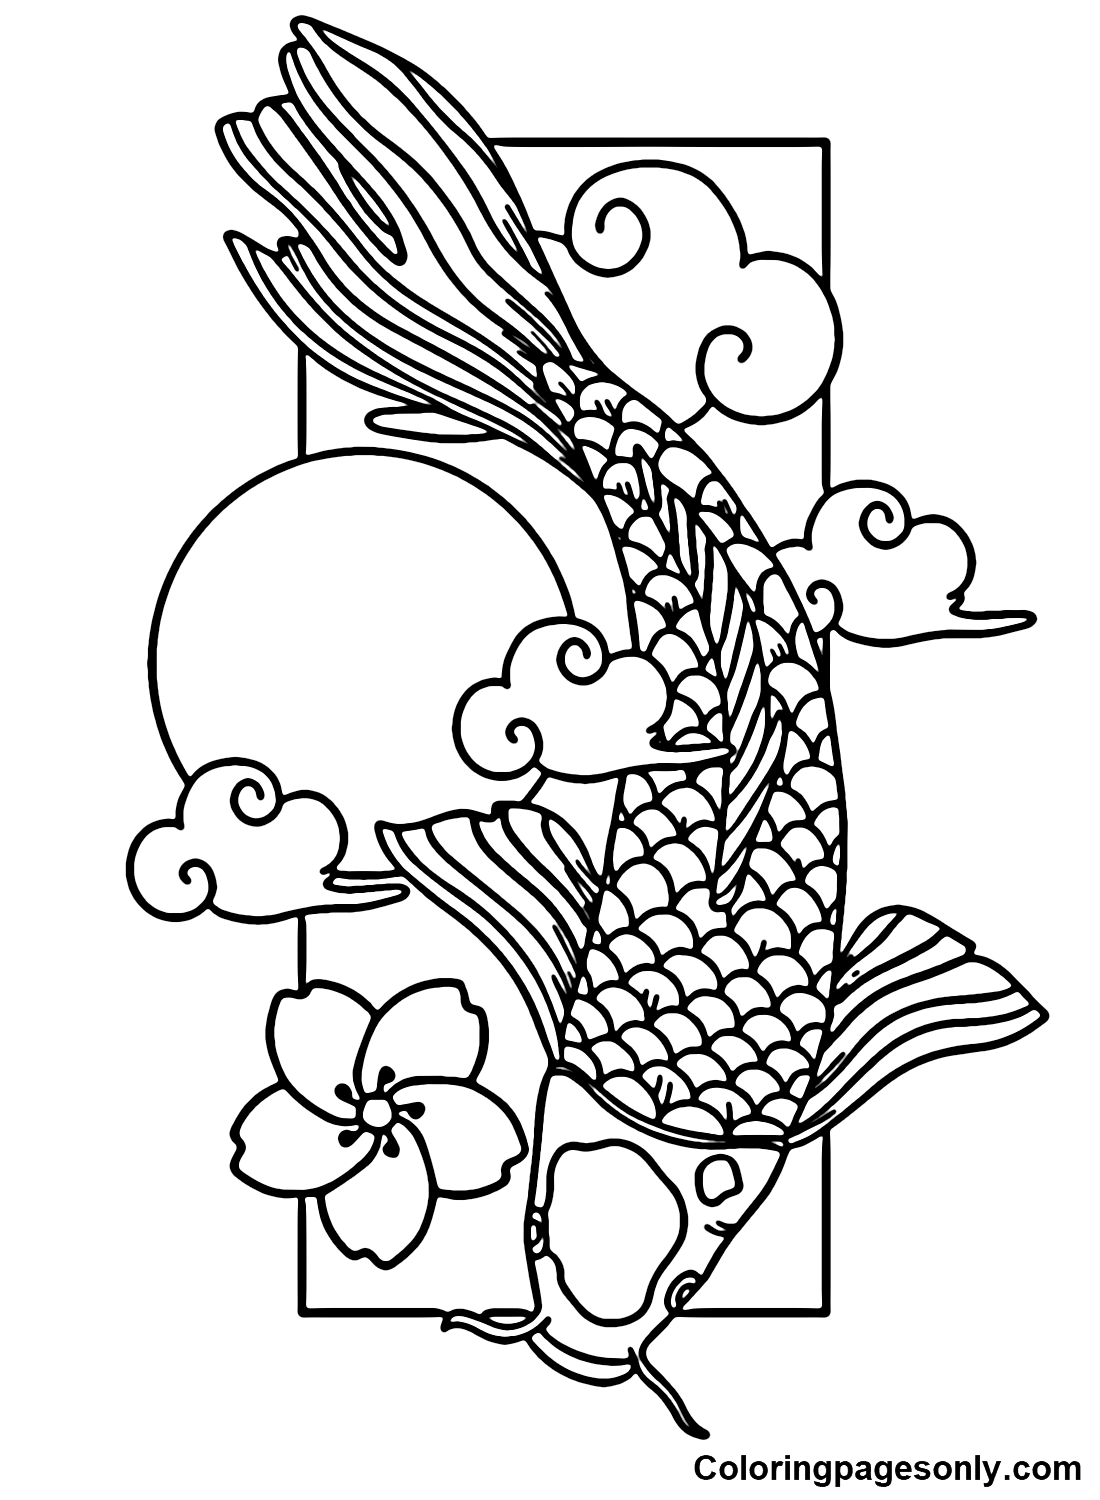 Printable Koi Fish Coloring Page